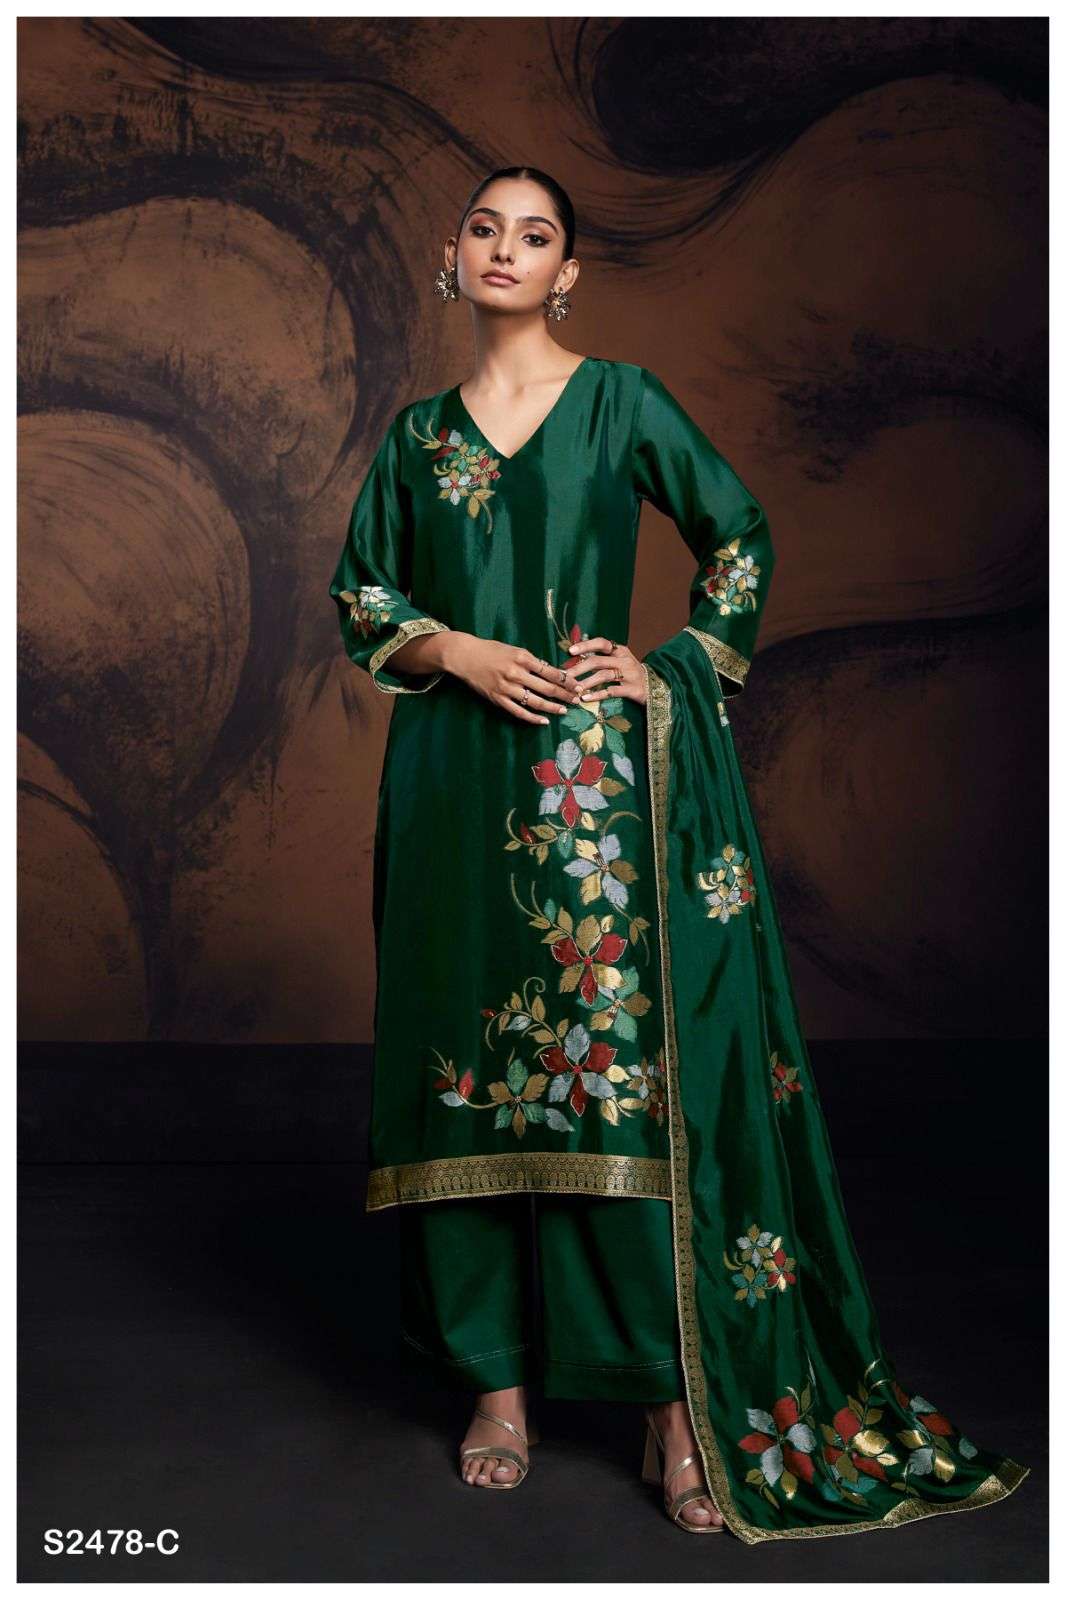 Ganga EVANIA 2478 Dress Materials Wholesale catalog